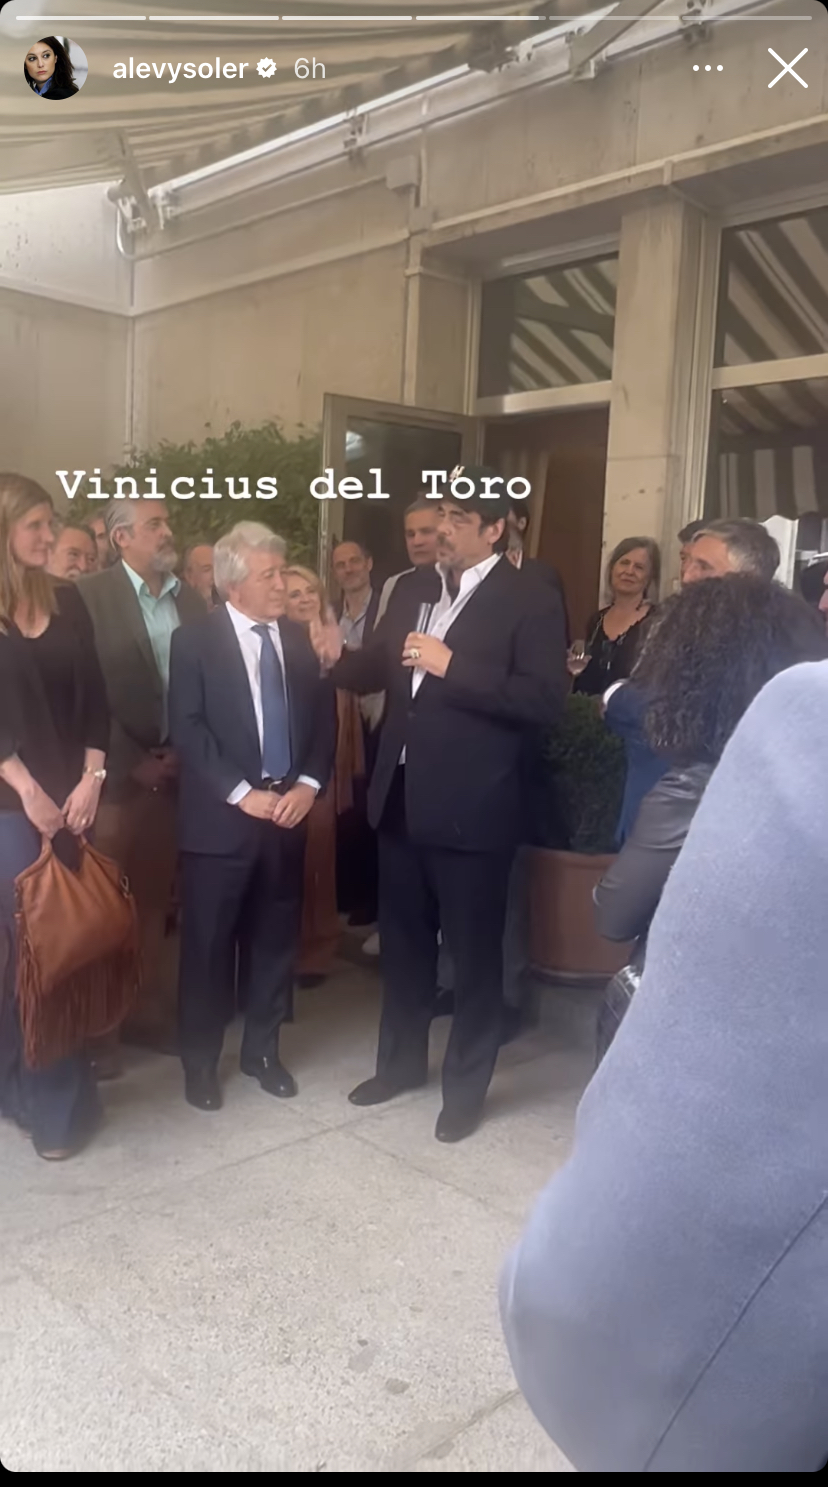 'Vinicius' del Toro, según Andrea Levy en su Instagram, con Enrique Cerezo.